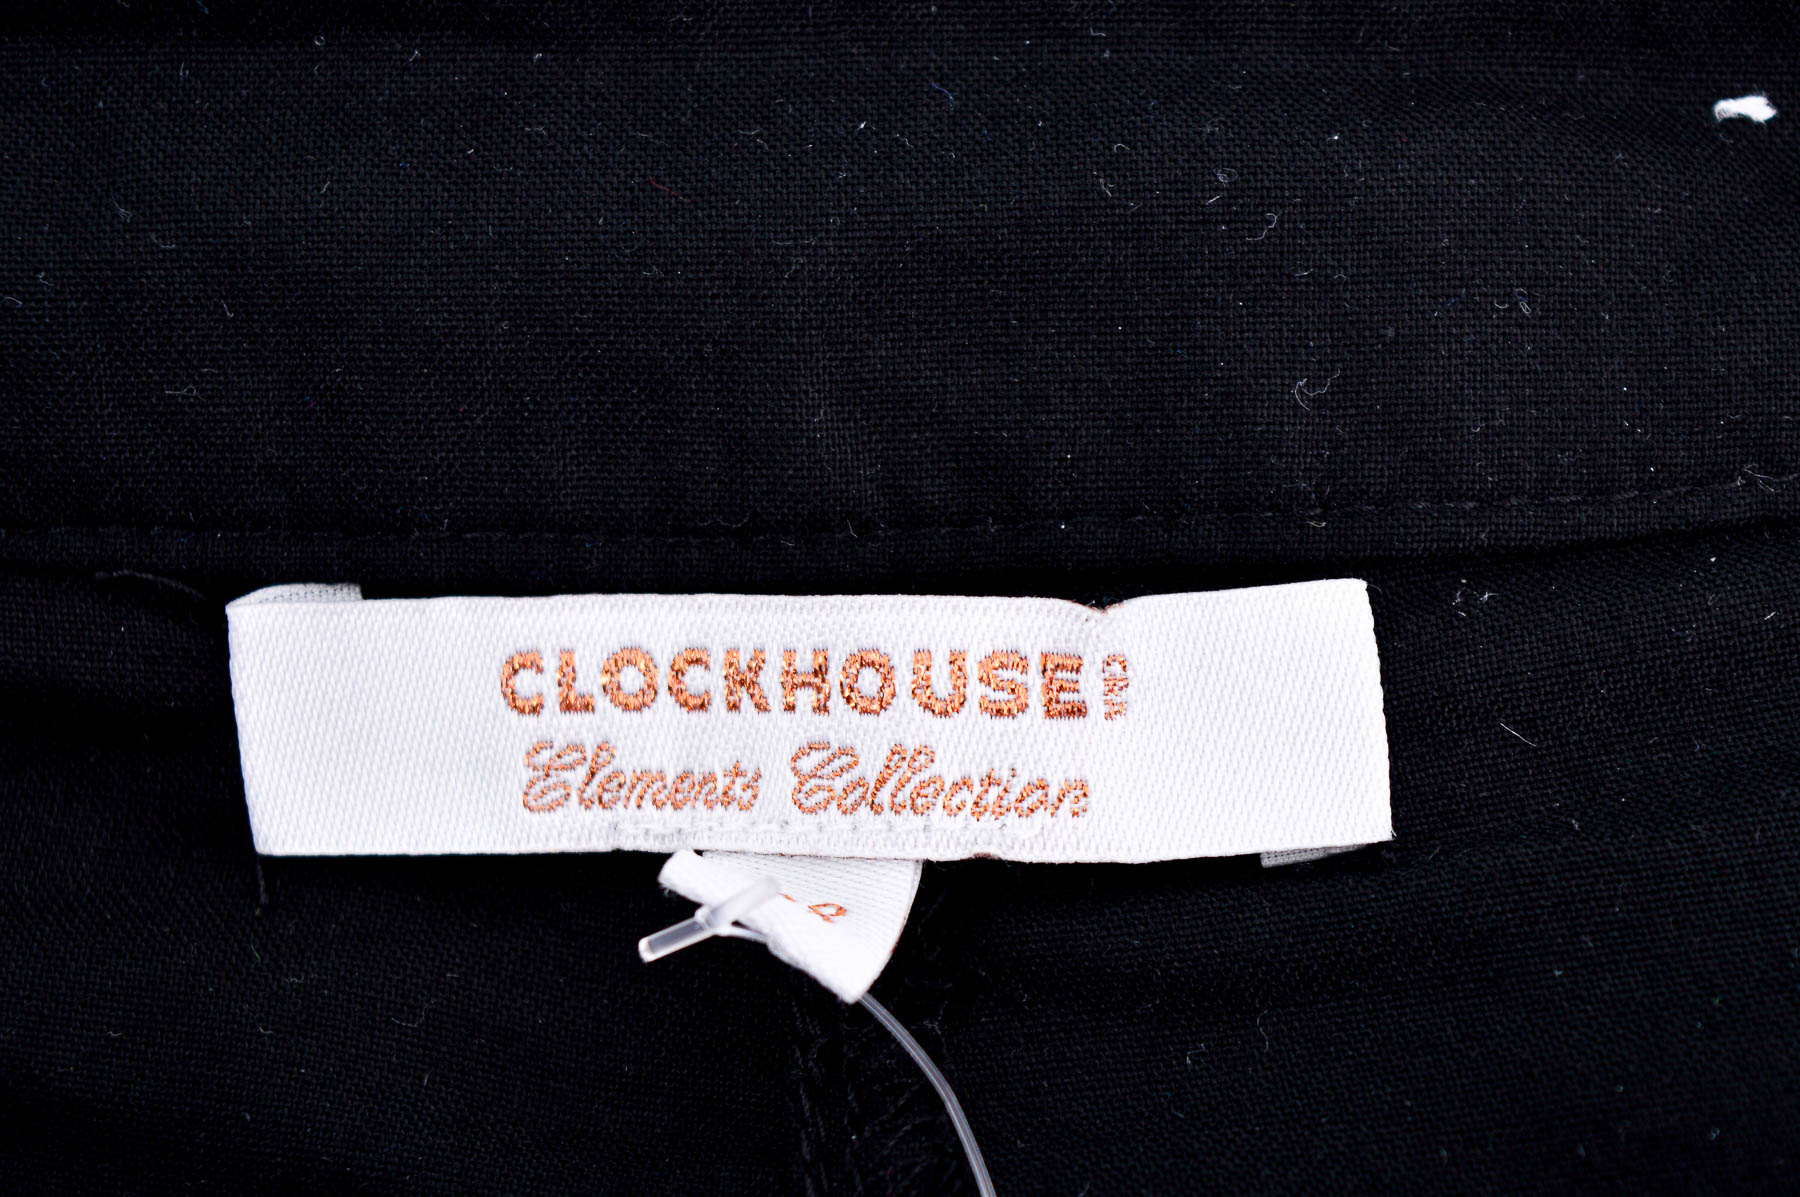 Female shorts - Clockhouse - 2